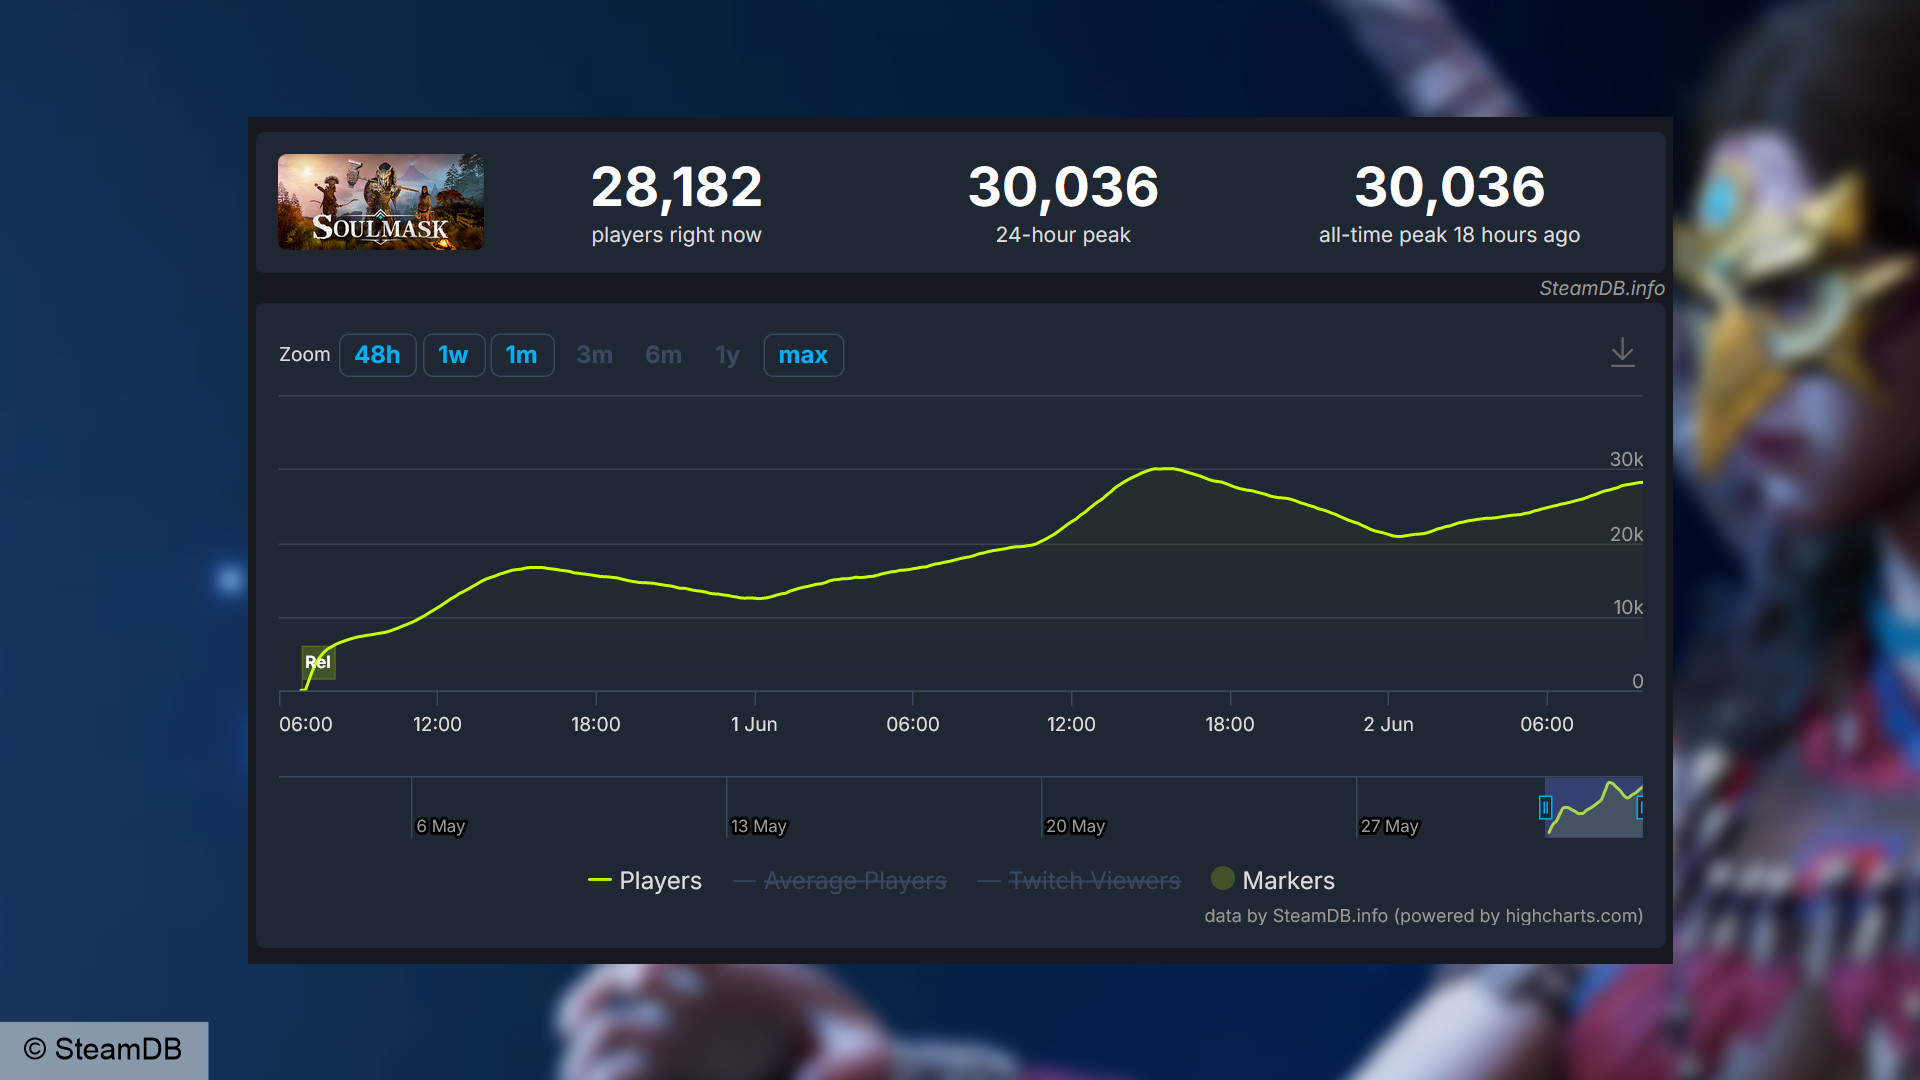 Soulmask - Hayatta kalma oyununun çıkışından sonraki ilk iki günde 30.036 eş zamanlı oyuncuyla tüm zamanların en yüksek noktasını gösteren SteamDB tablosu.